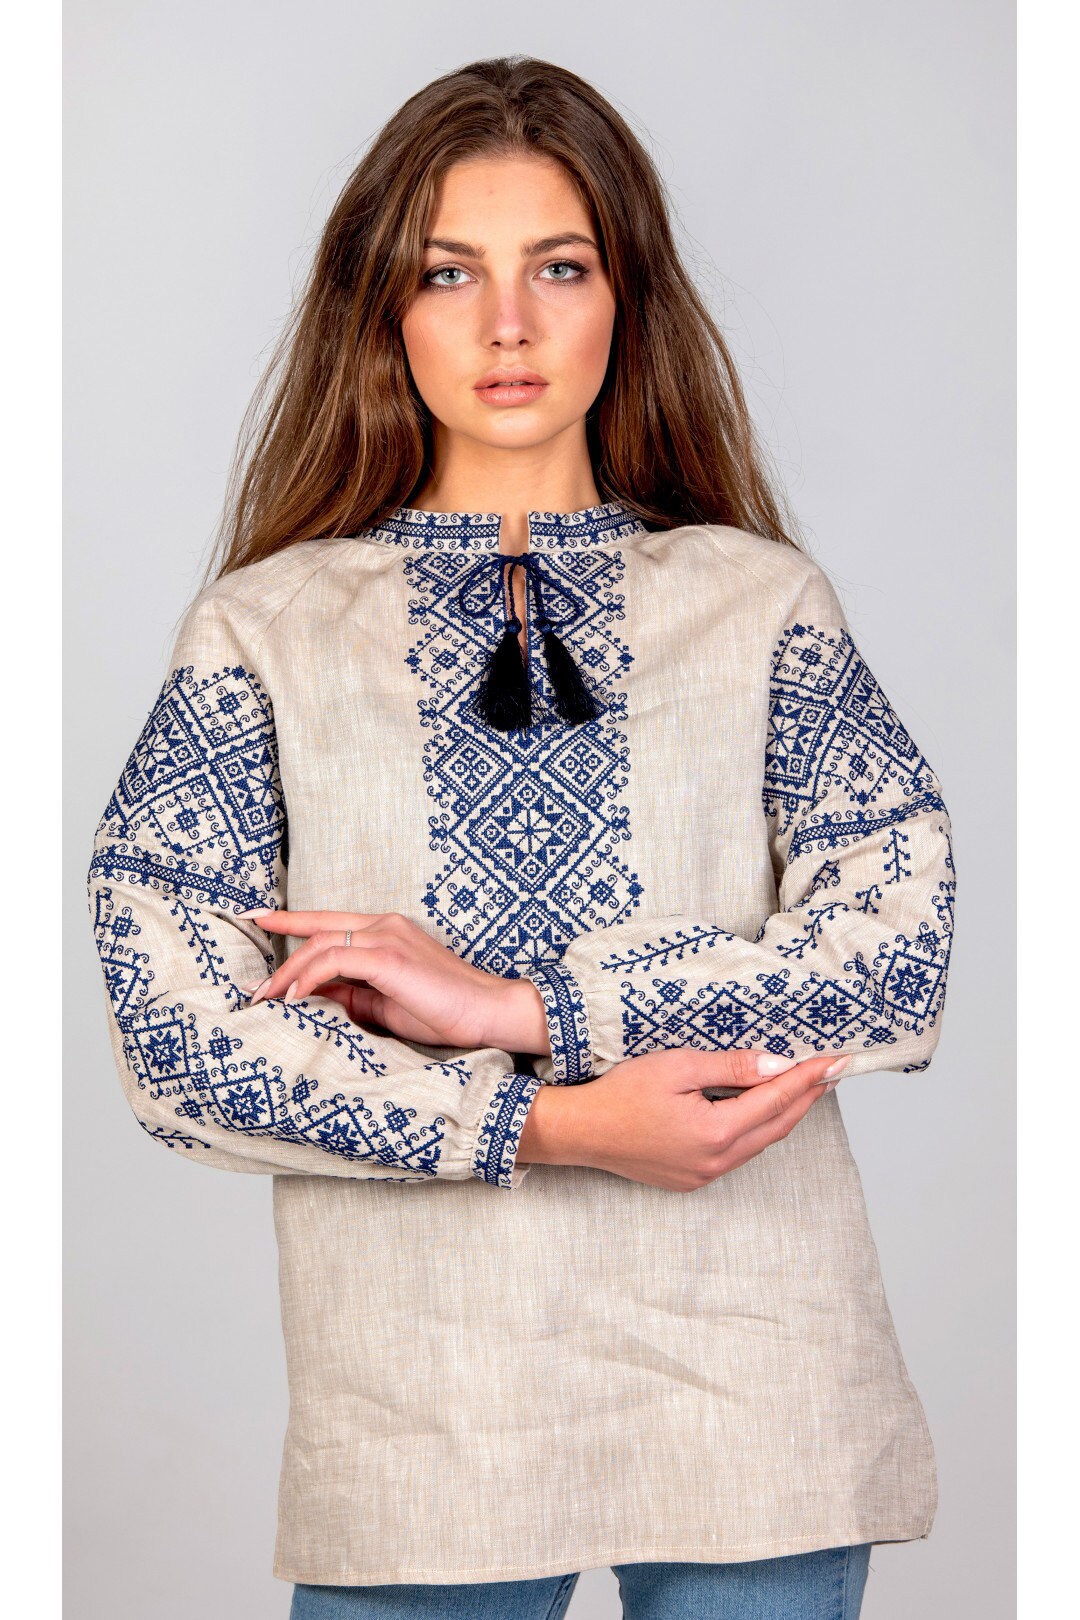 Romanian Blouse Embroidered Linen Shirt,linen Top,linen Blouse,flax ...